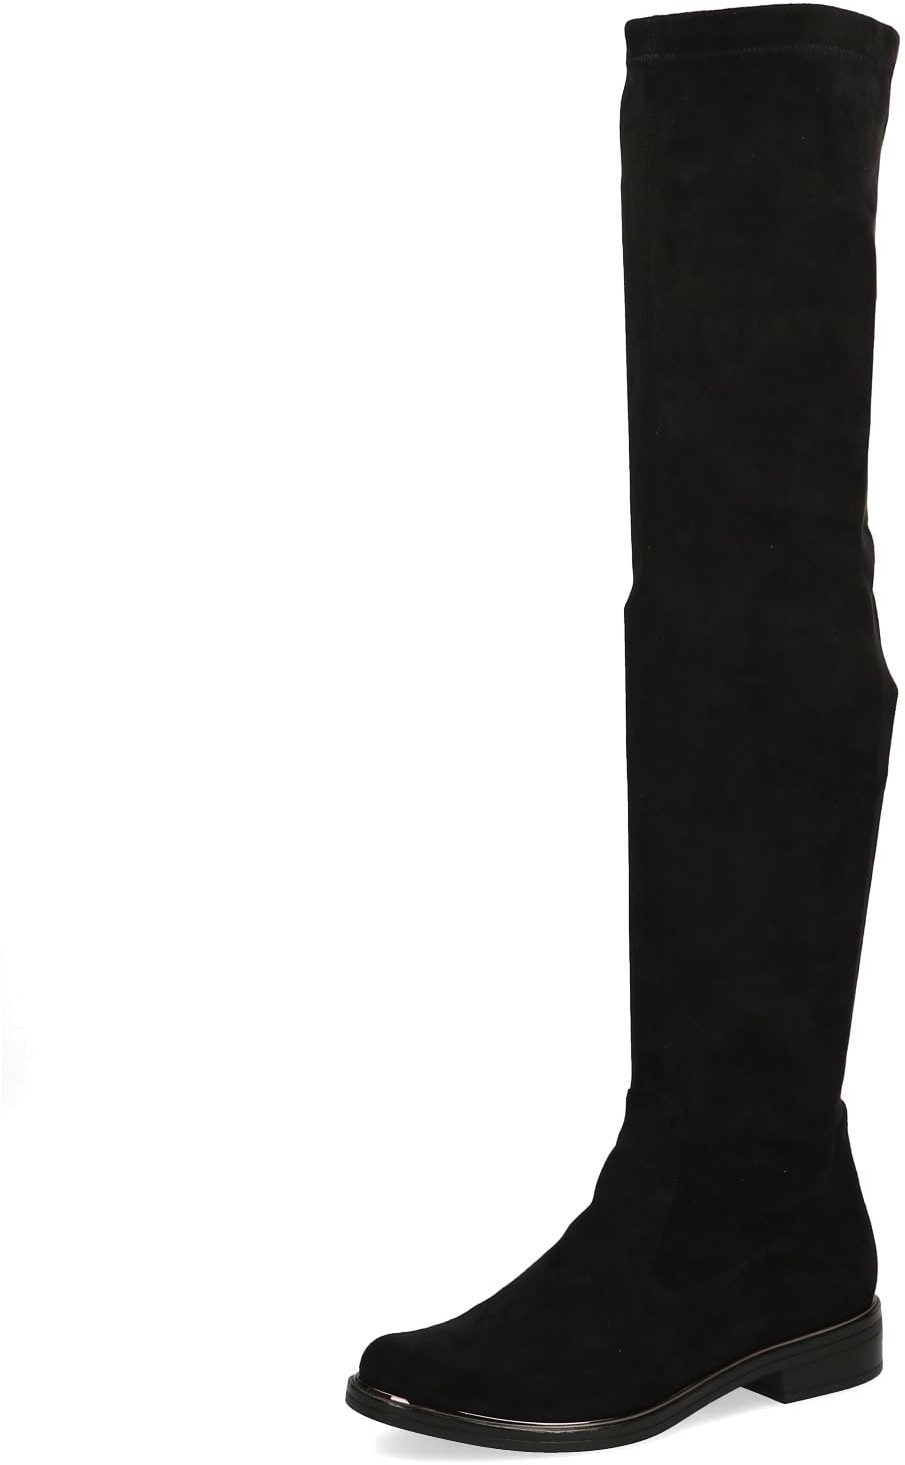 CAPRICE Damen Overknee Stiefel Flach Elegant Weite G, Schwarz (Black Stretch), 38.5 EU